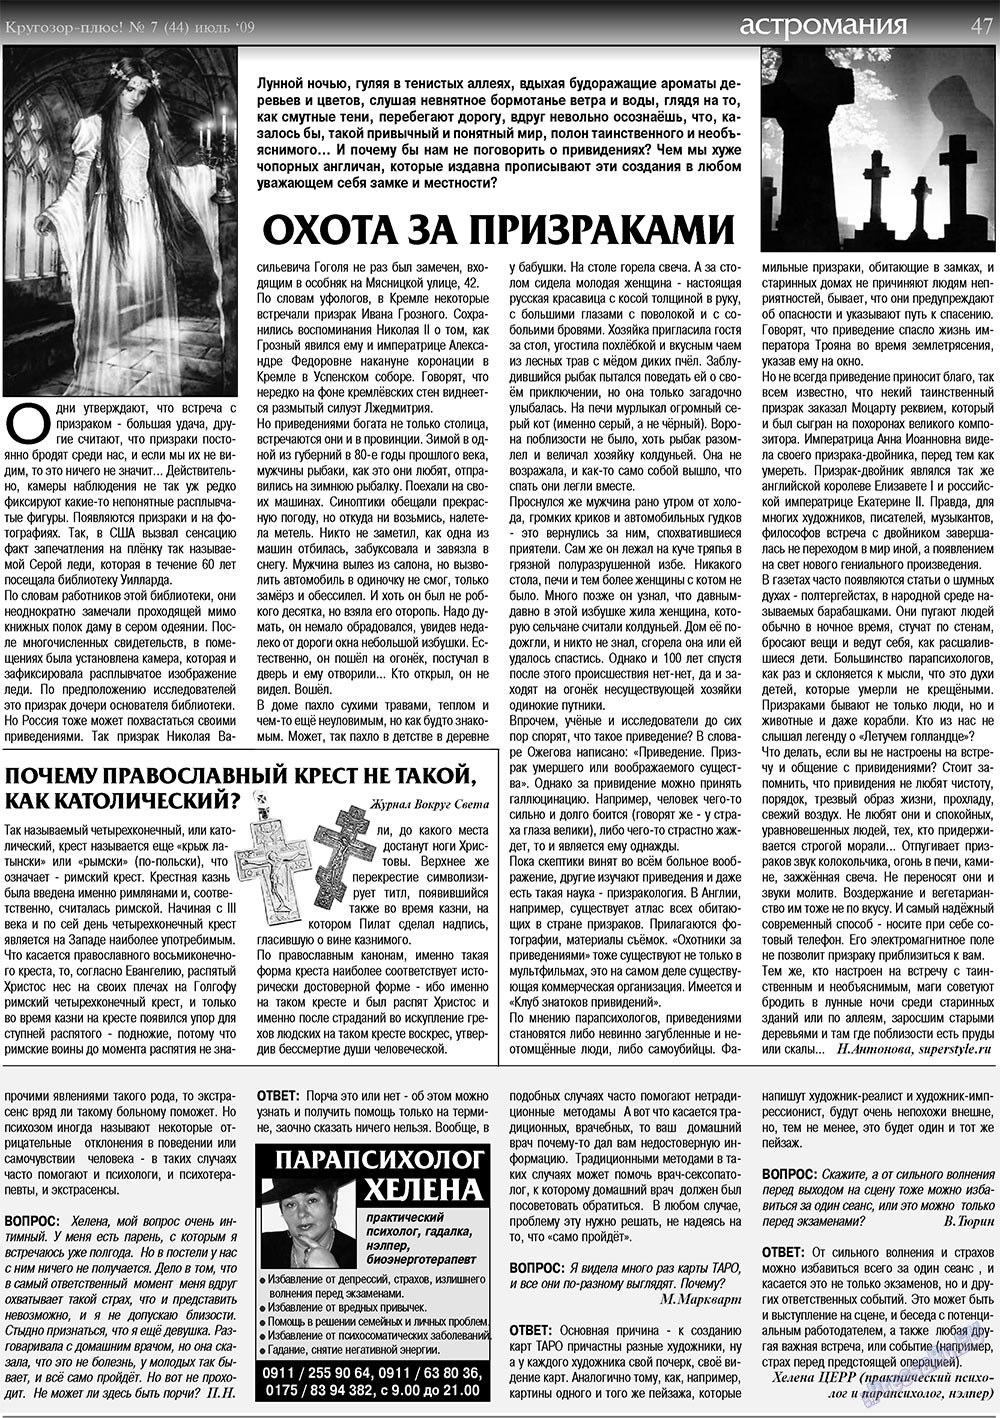 Кругозор плюс!, газета. 2009 №7 стр.47